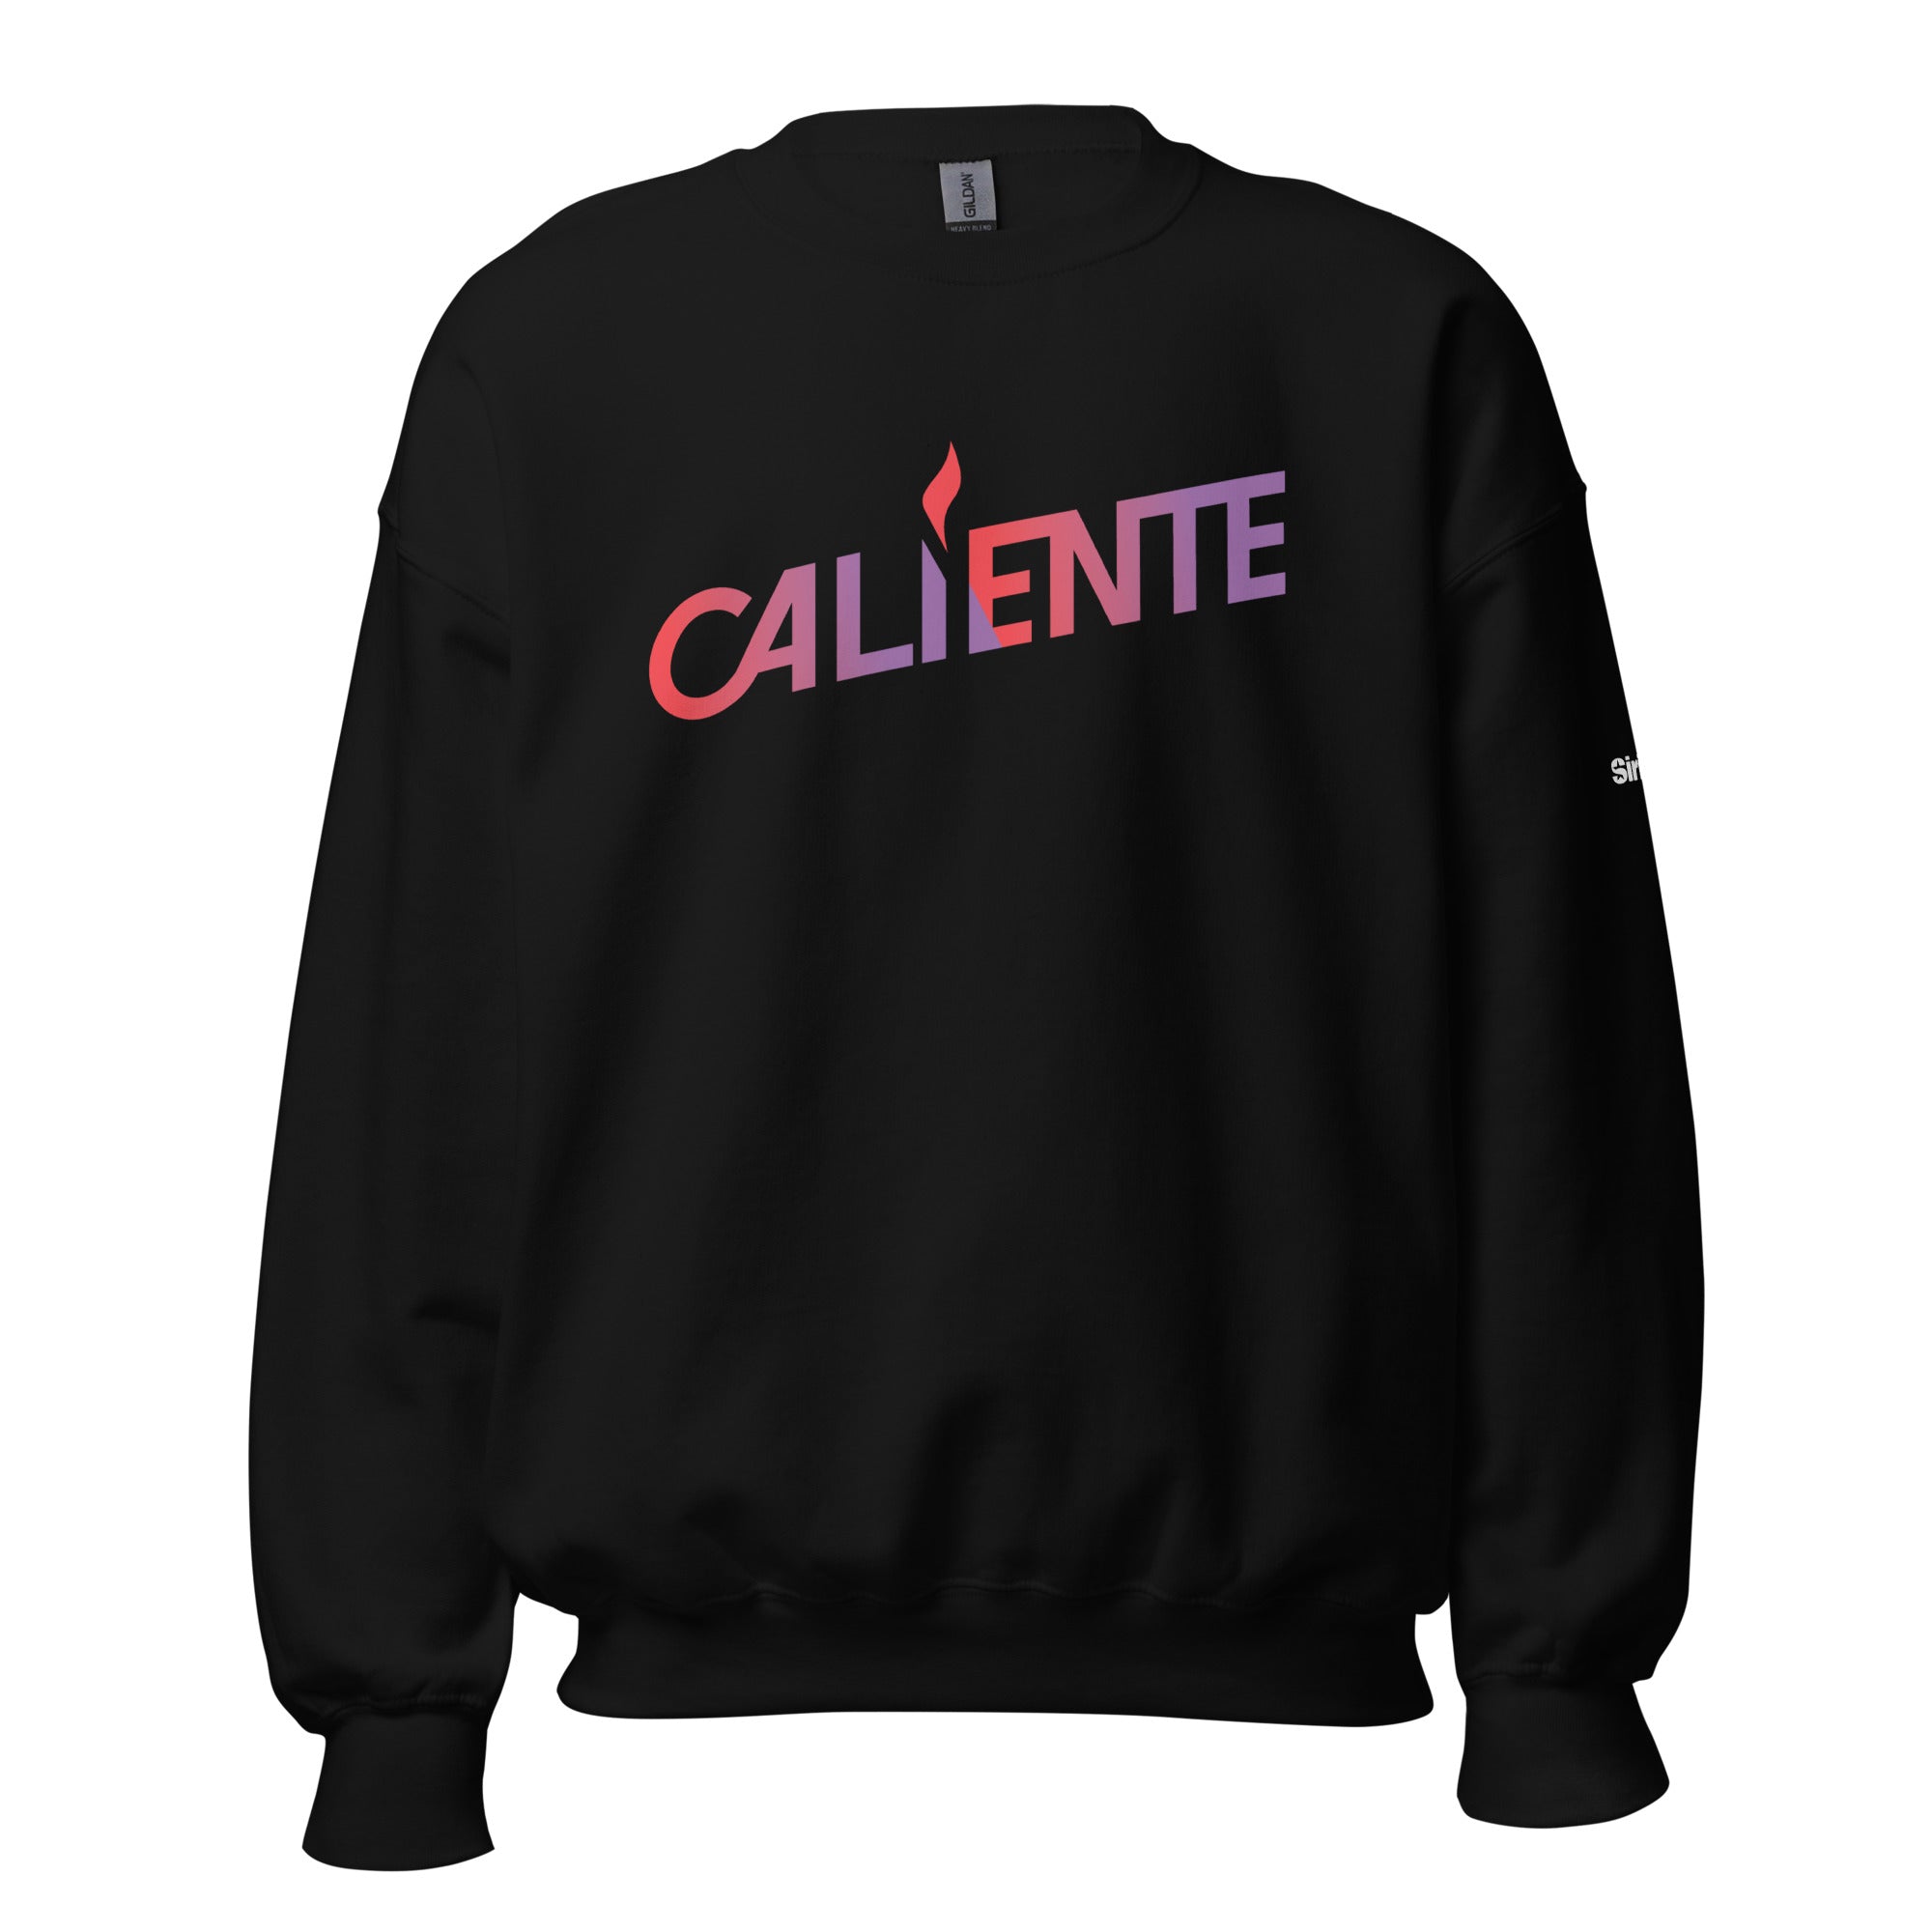 Caliente: Sweatshirt (Black)